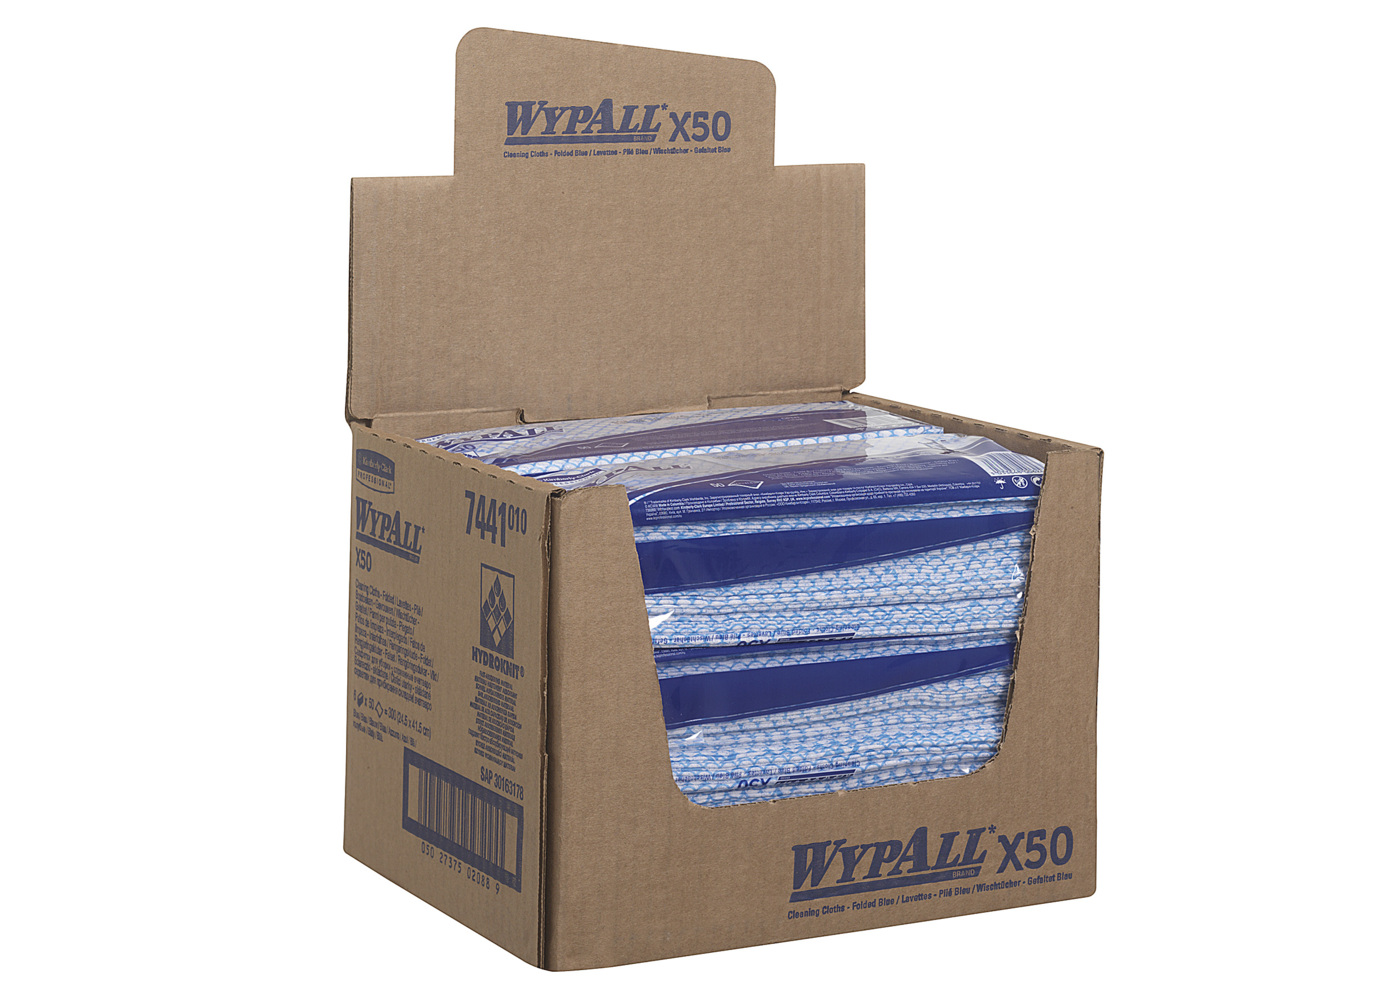 WypAll® X50 Farbcodierte Reinigungstücher 7441 – 6 Packungen x 50 Farbcodierte Wischtücher mit Interfold-Faltung (insges. 300) - 7441